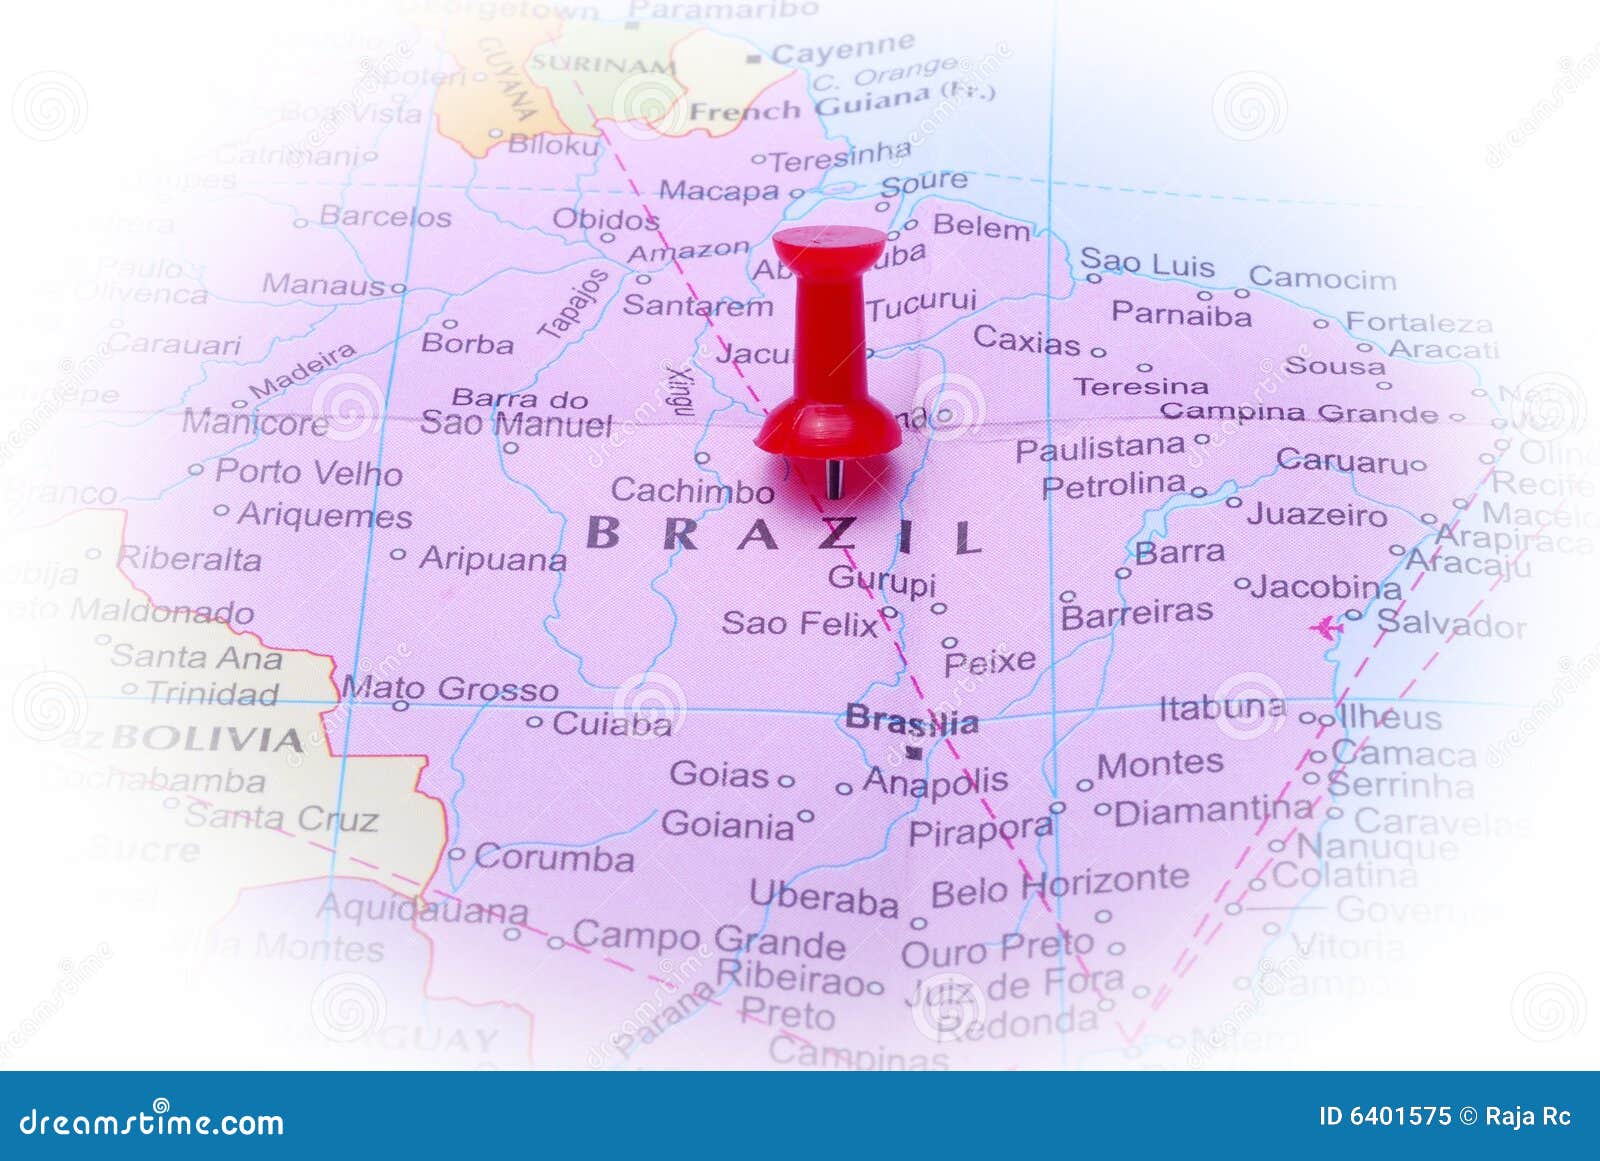 brazil in map